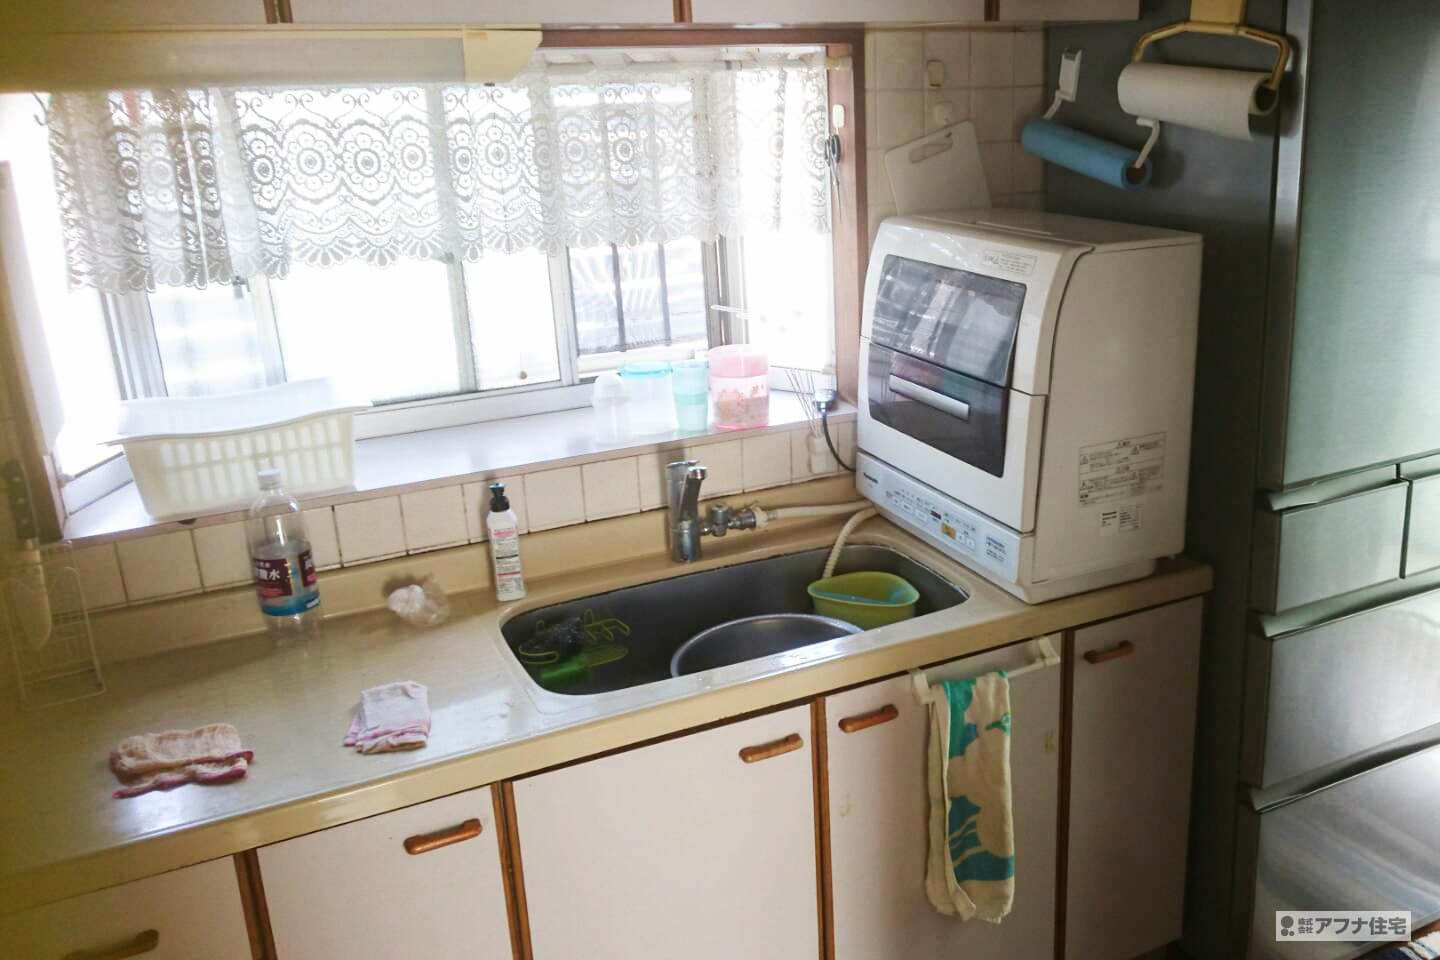 アフナ住宅|システムキッチン入れ替え・オール電化・浴室乾燥暖房機取付工事施行前写真